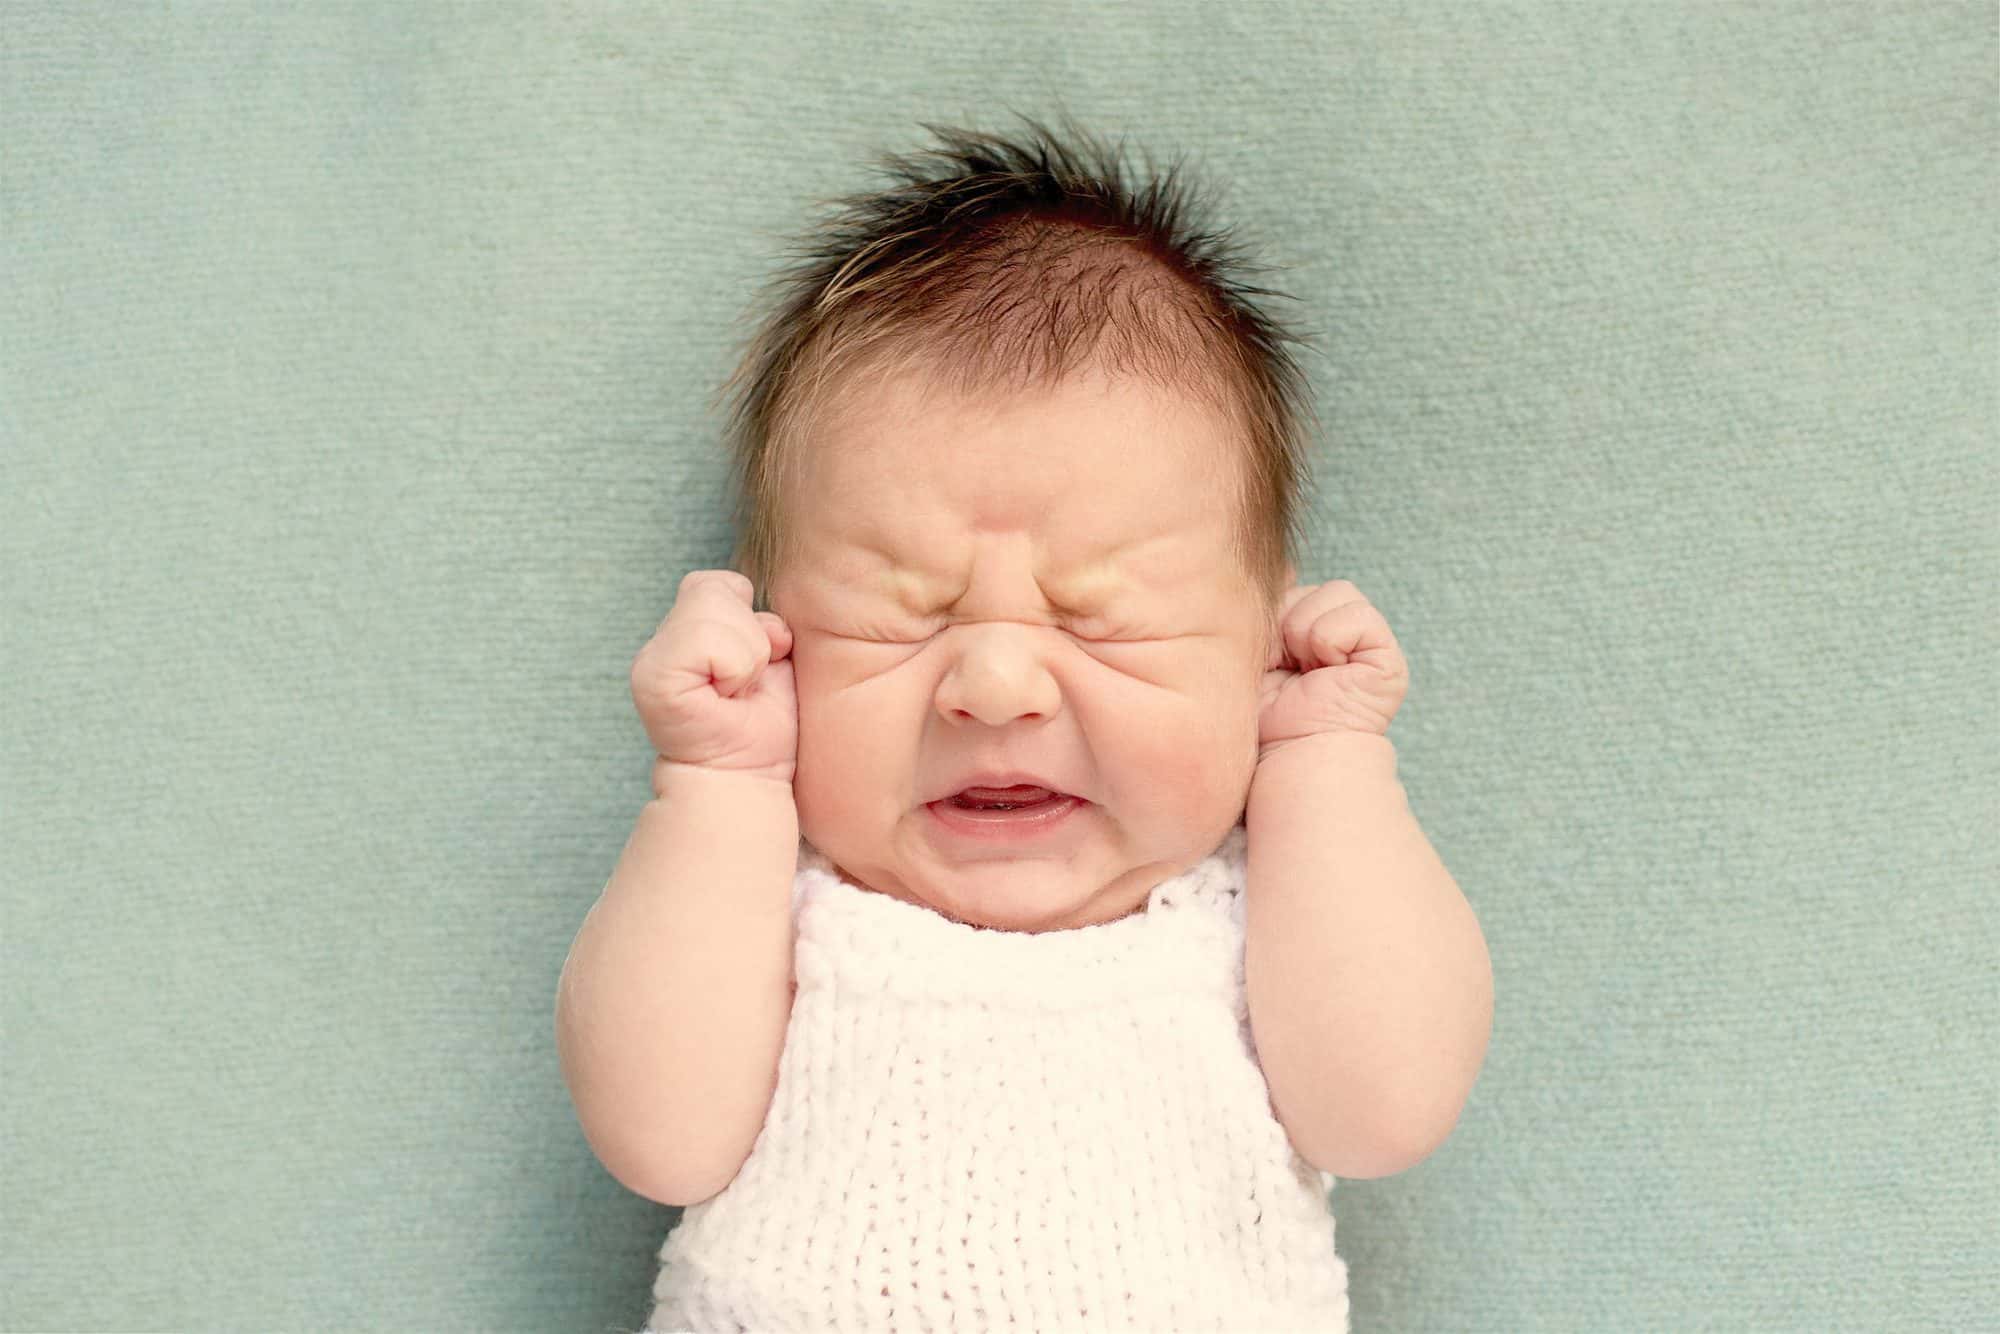 Qué hacer cuando un bebé no puede respirar por mocos? - CSC